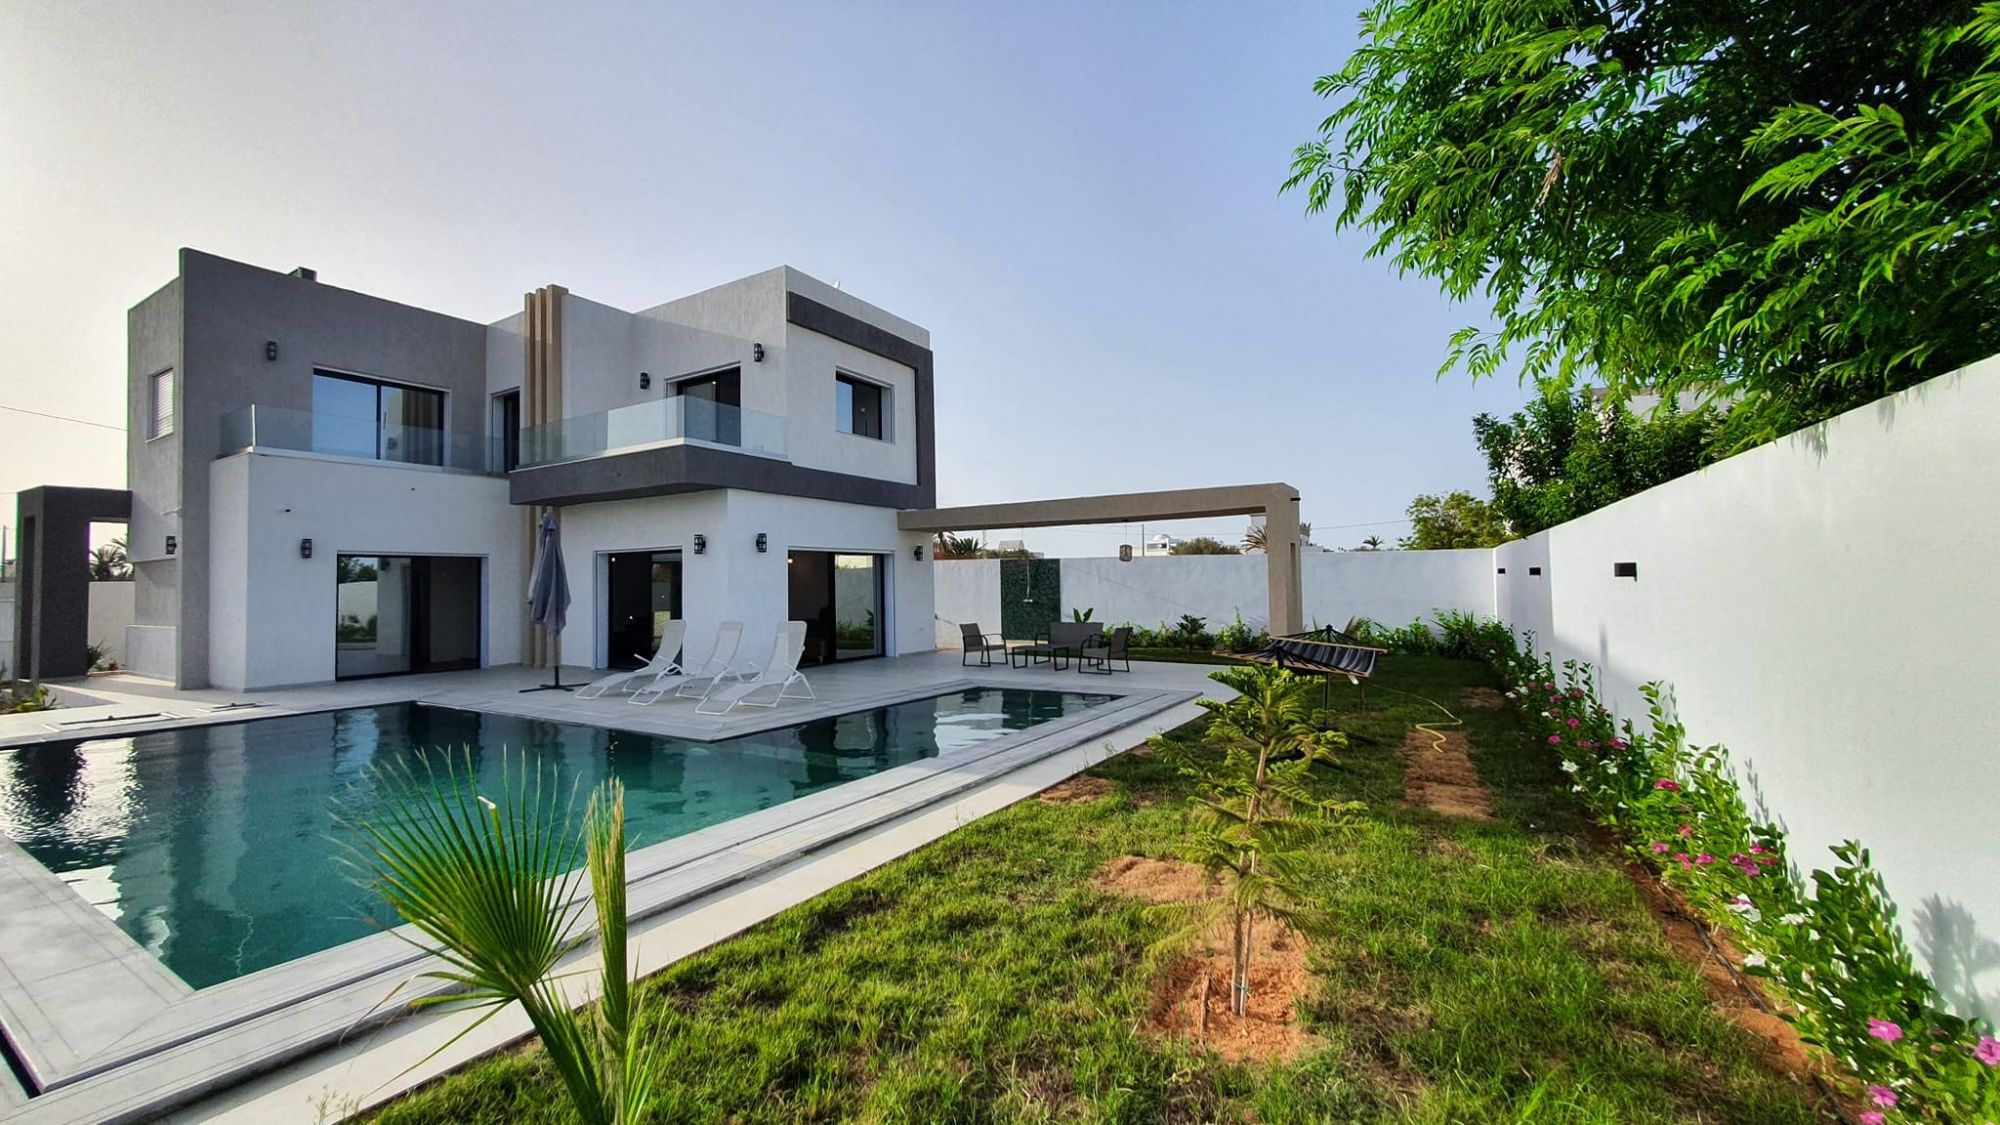 A vendre villa de luxe vue sur mer à lagune